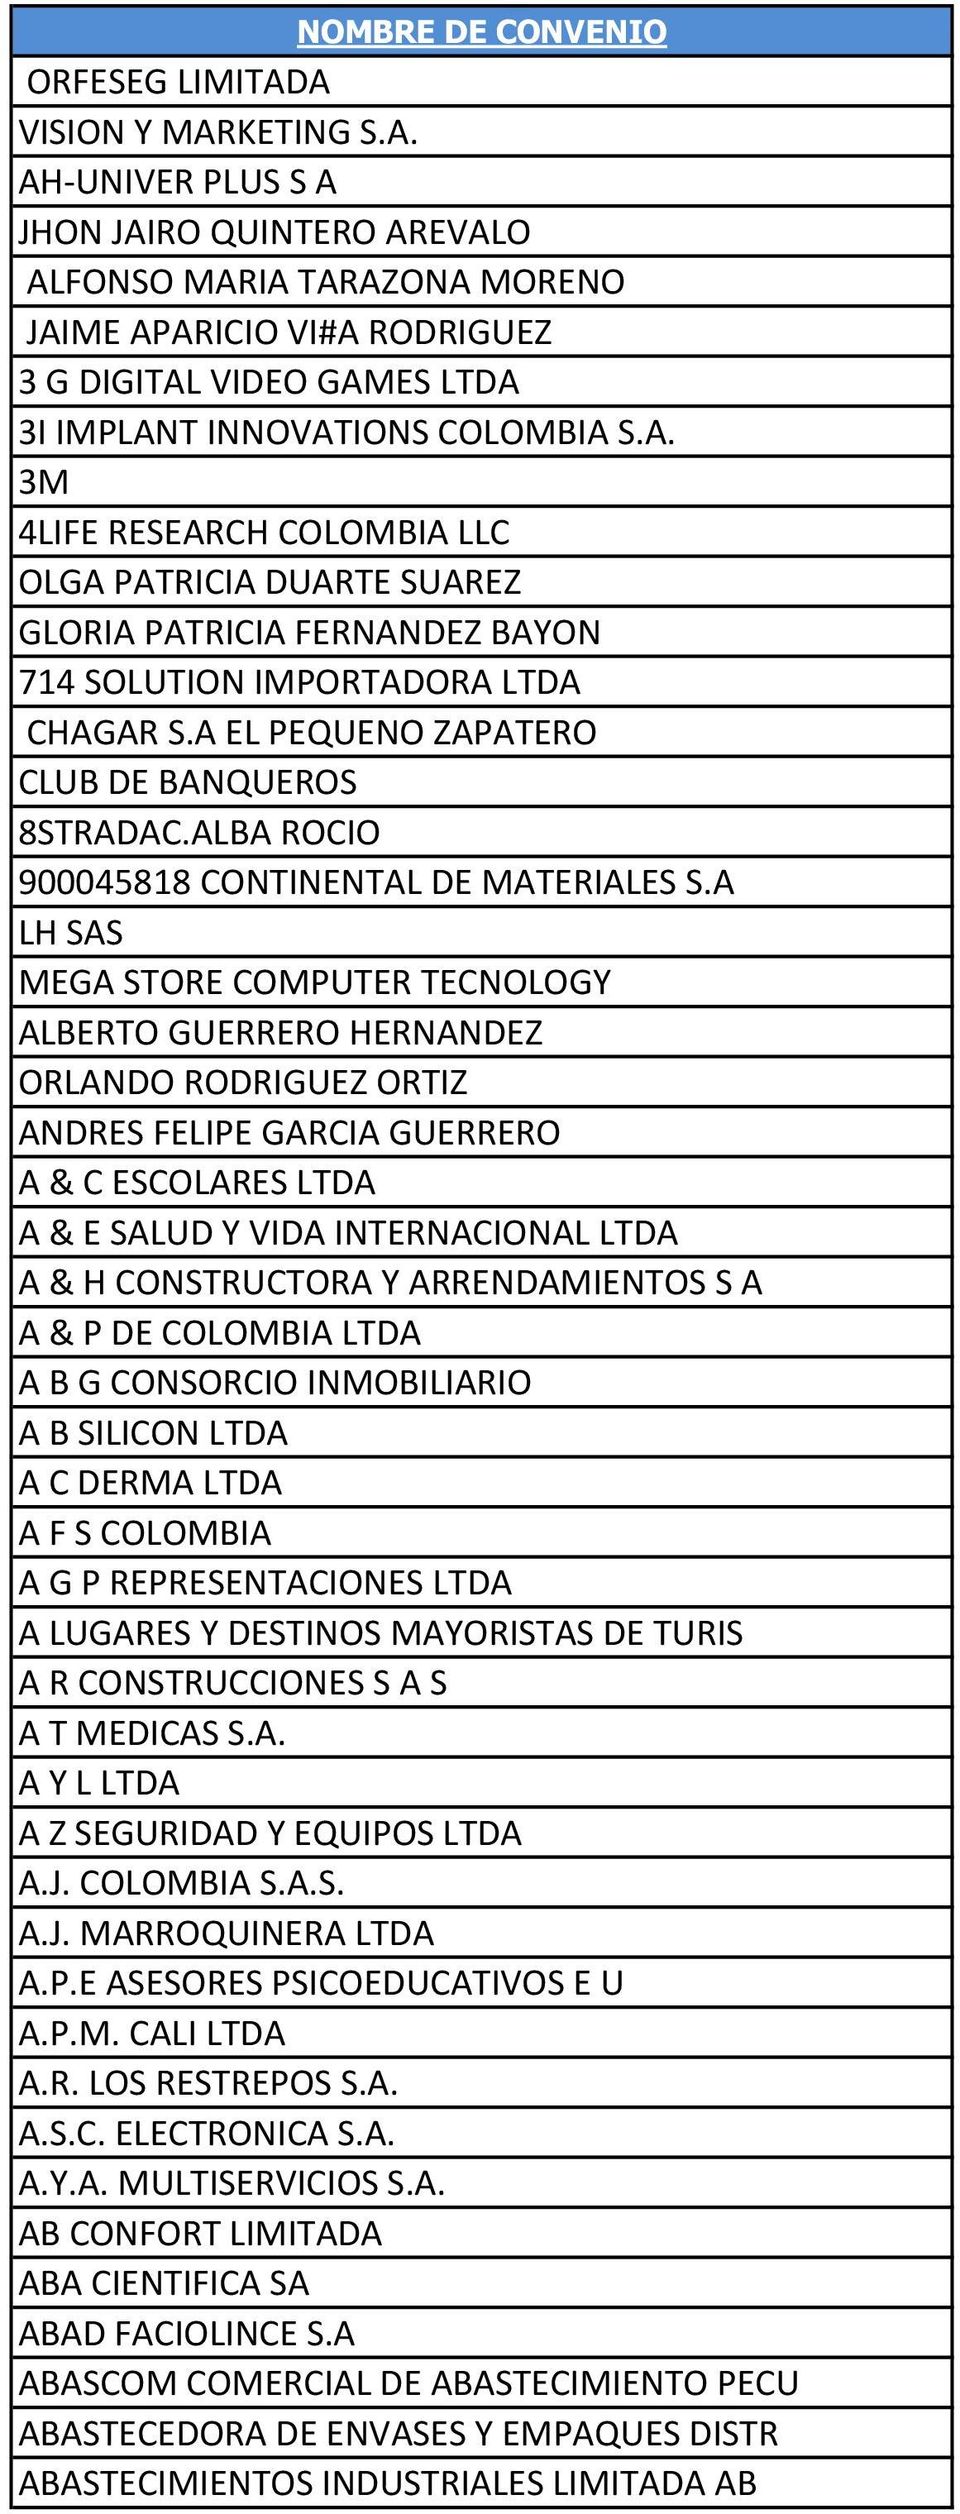 A EL PEQUENO ZAPATERO CLUB DE BANQUEROS 8STRADAC.ALBA ROCIO 900045818 CONTINENTAL DE MATERIALES S.